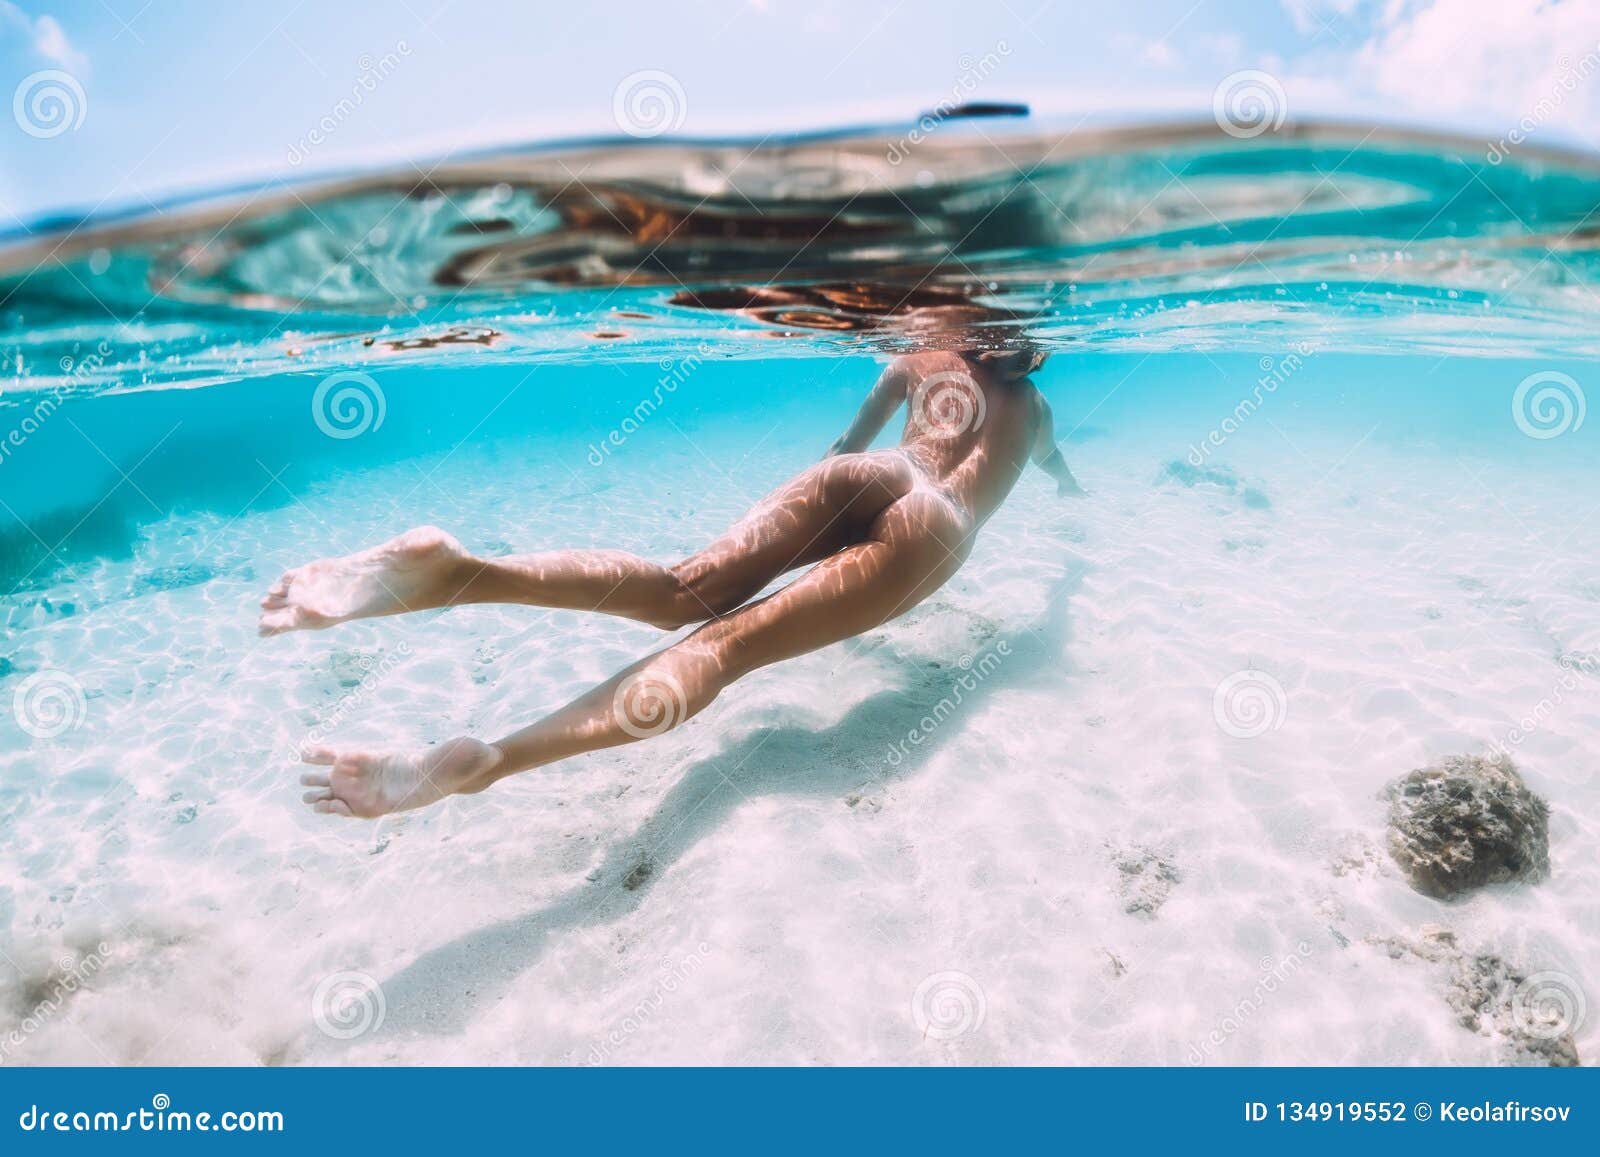 nude girl swimming in the sea free photo